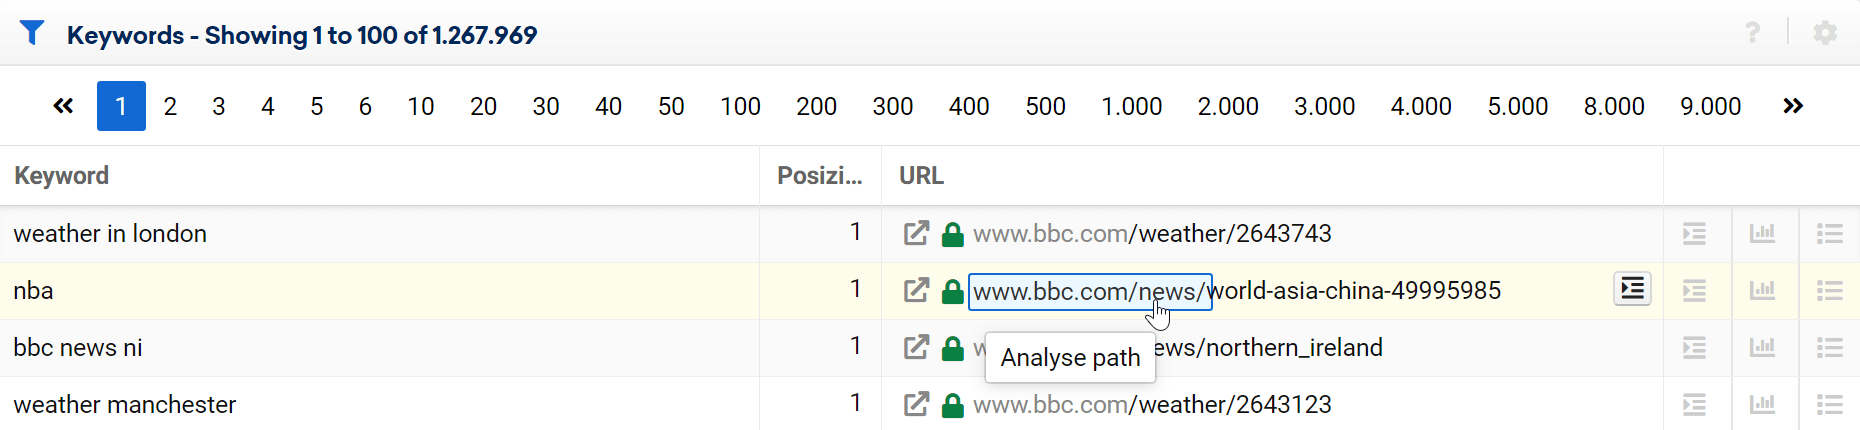 Ansicht der Keyword-Tabelle für die Domain bbc.com. Der Mauszeiger steht über dem /news/-Verzeichnis, in der URL Spalte eines Ergebnisses, und mit einem Klick kann nur dieses Verzeichnis ausgewertet werden.